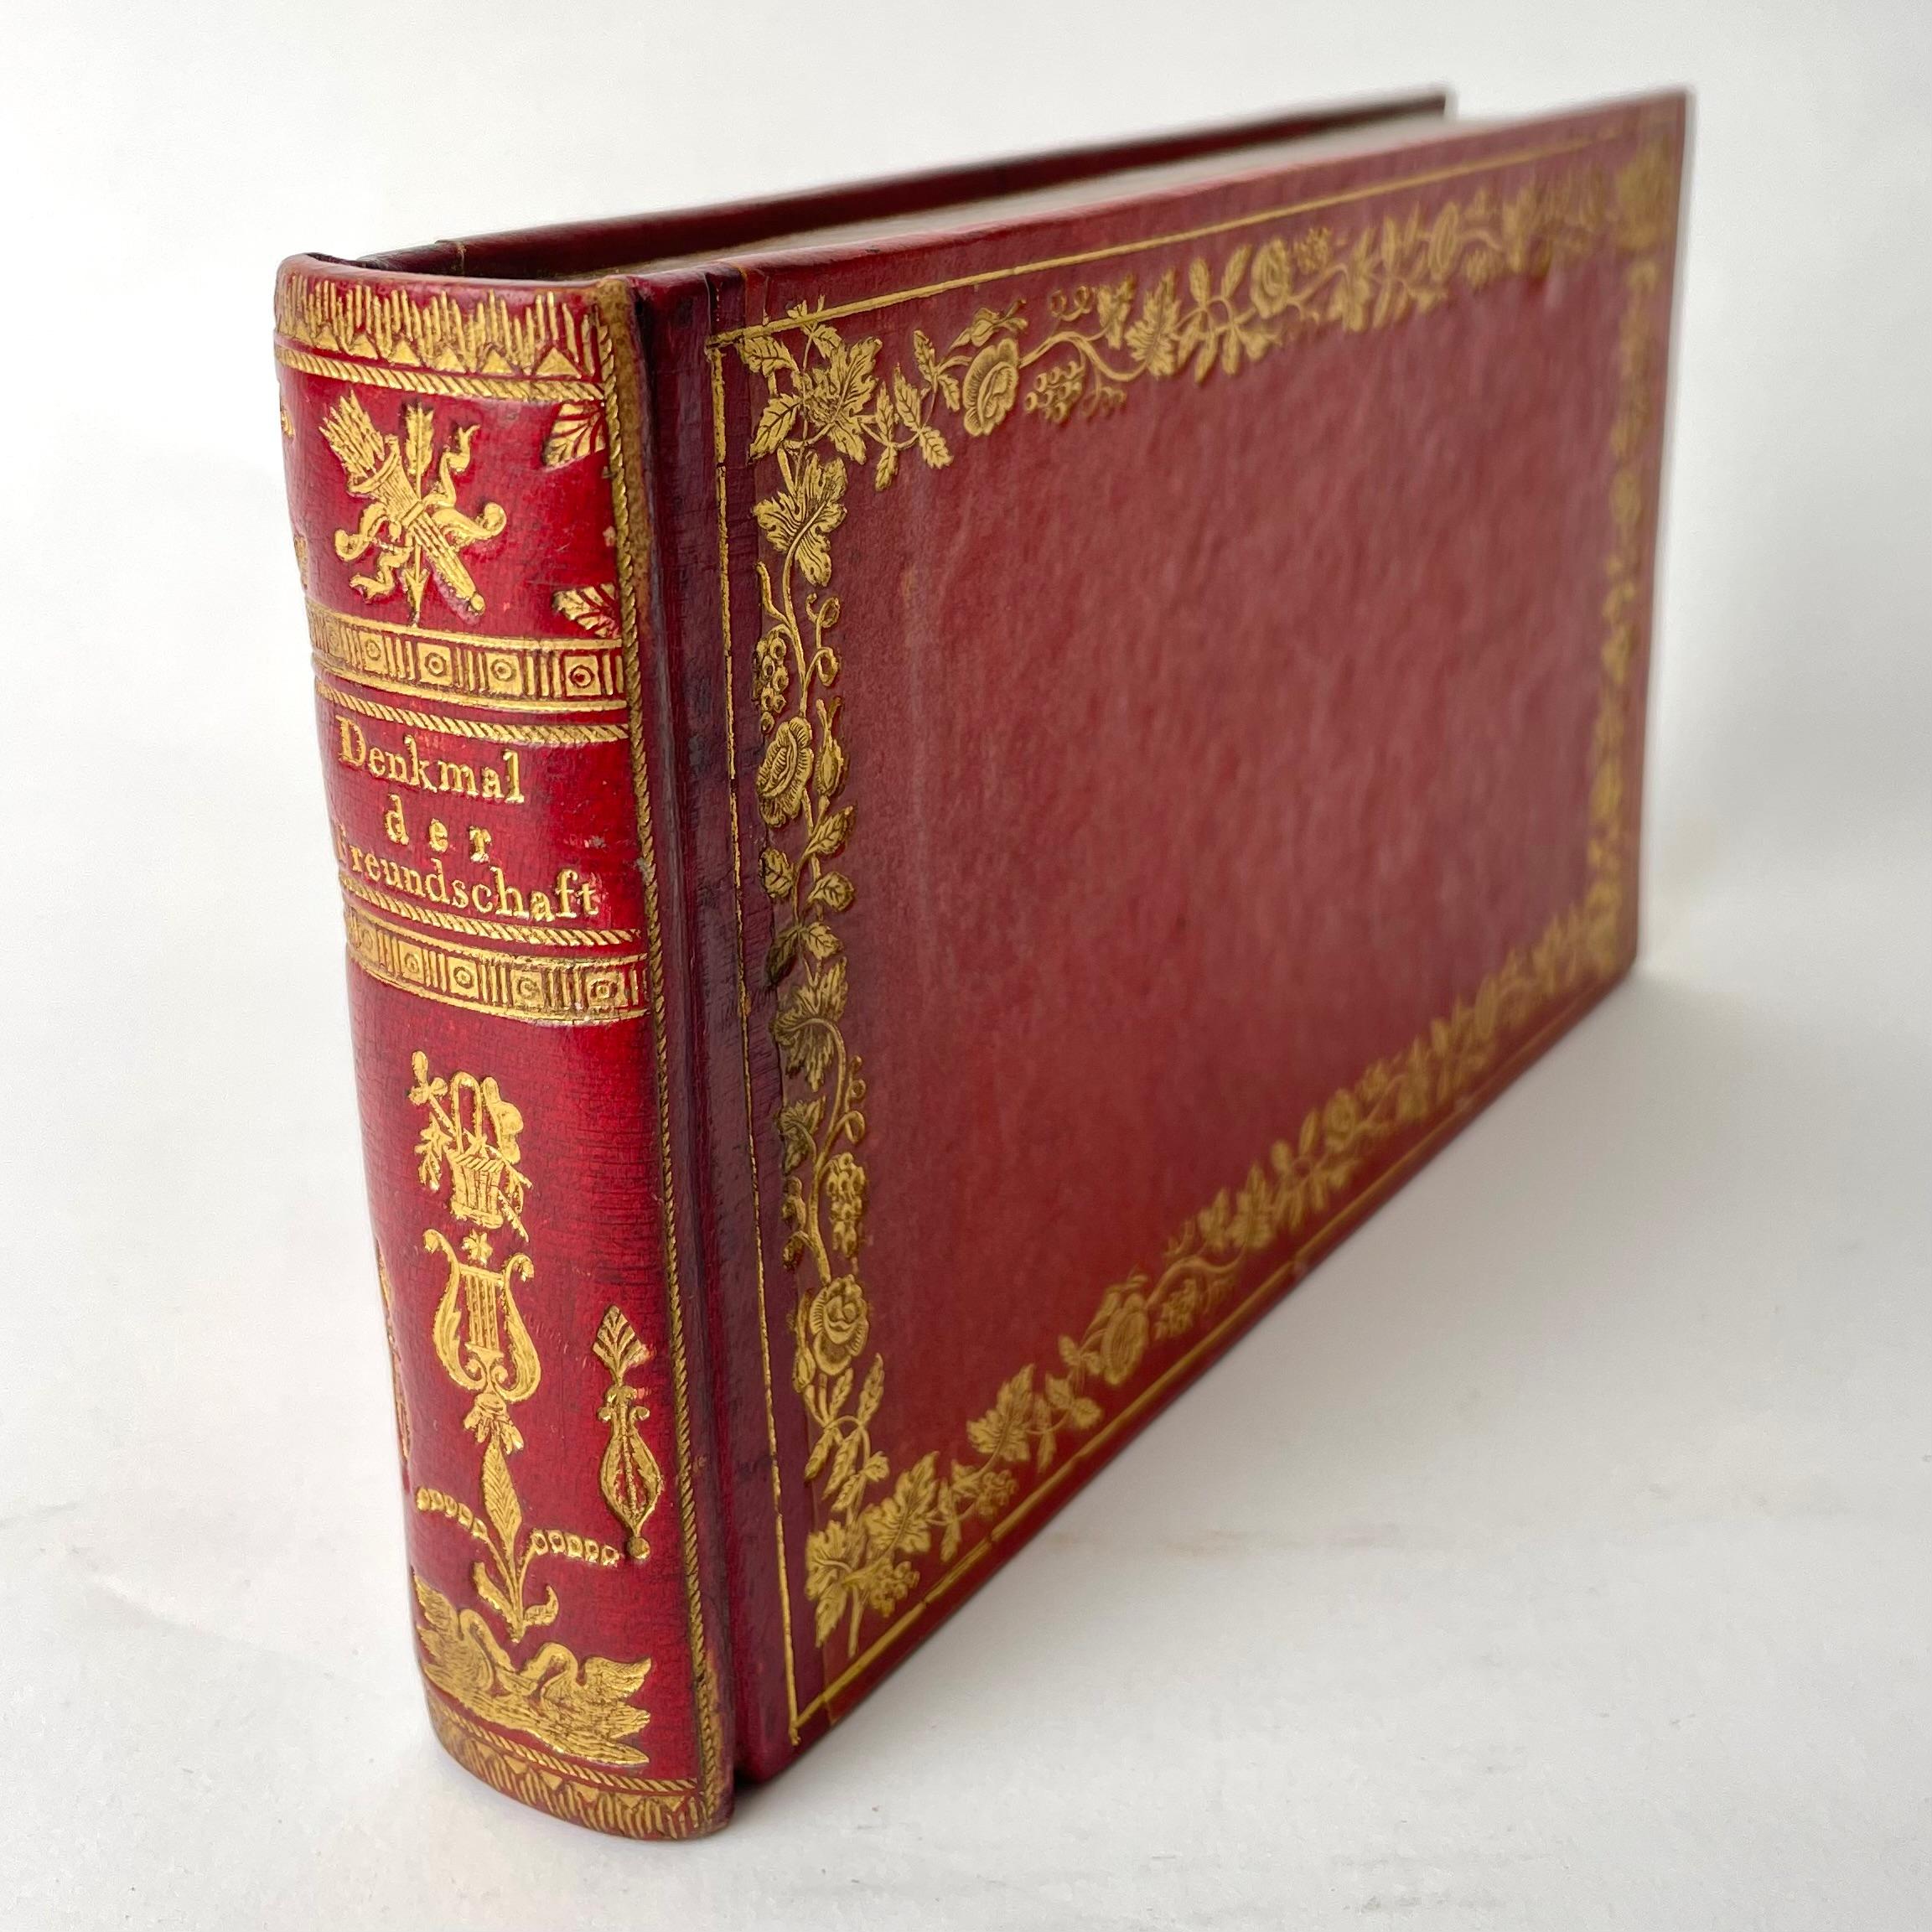 Schwedische Liebesbrieftasche in Form eines Buches aus der Empirezeit der 1820er Jahre. Hergestellt von Buchbinder A.U. Hagman, Göteborg Schweden in den 1820er Jahren. Enthält eine Reihe von Briefen aus den 1820er Jahren.

Abnutzung entsprechend dem